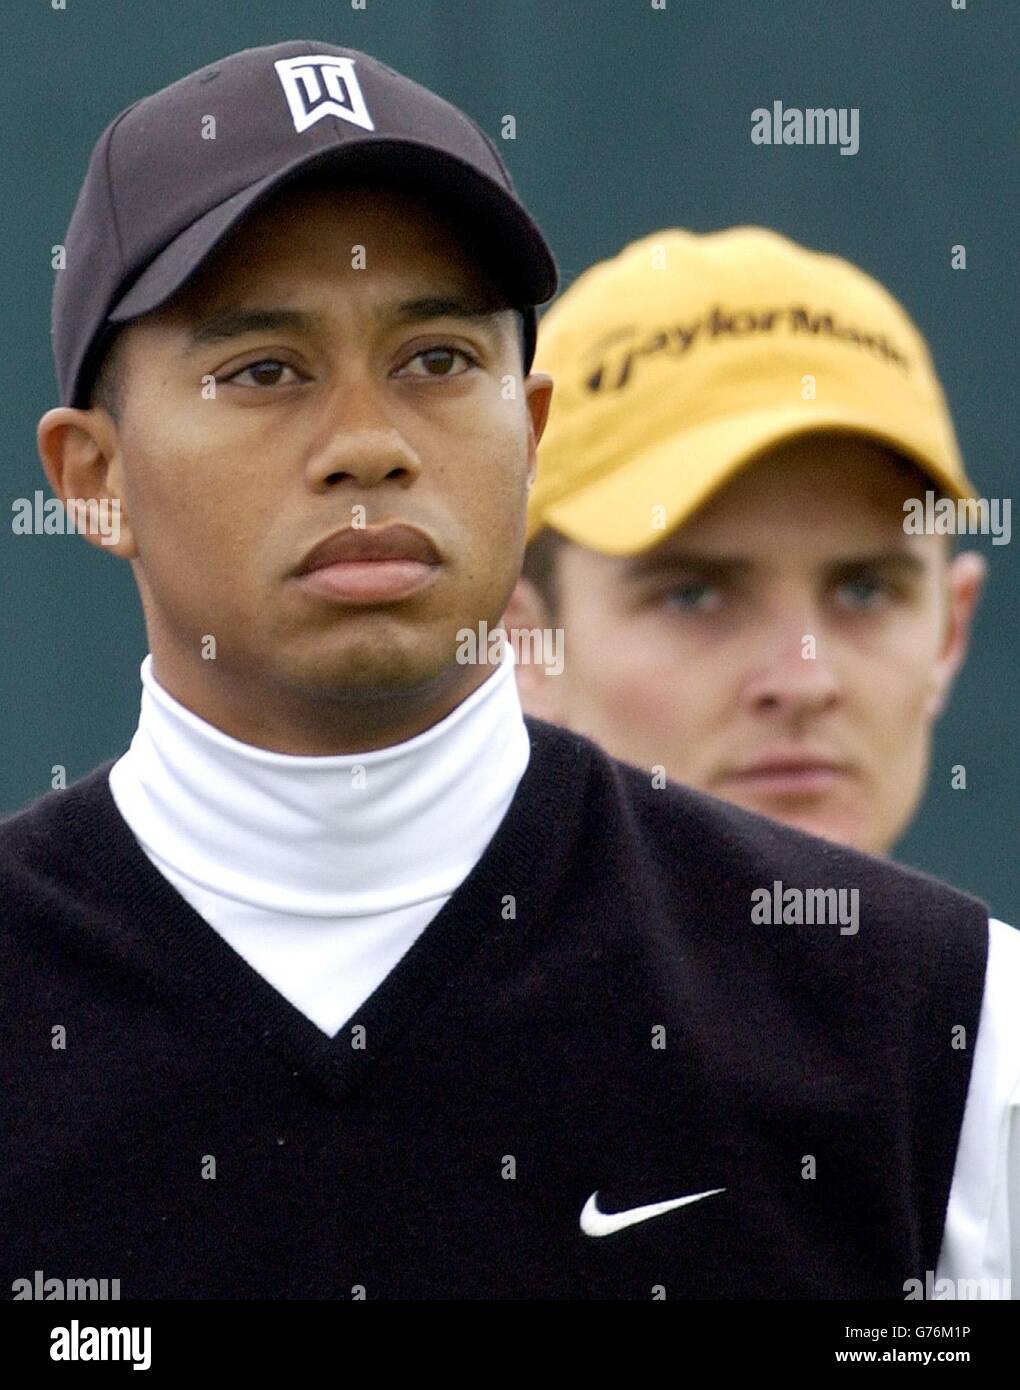 Tiger Woods aux États-Unis (à gauche) avec Justin Rose en Angleterre, lors du premier tour du 131e Open Championship à Muirfield, en Écosse. Banque D'Images